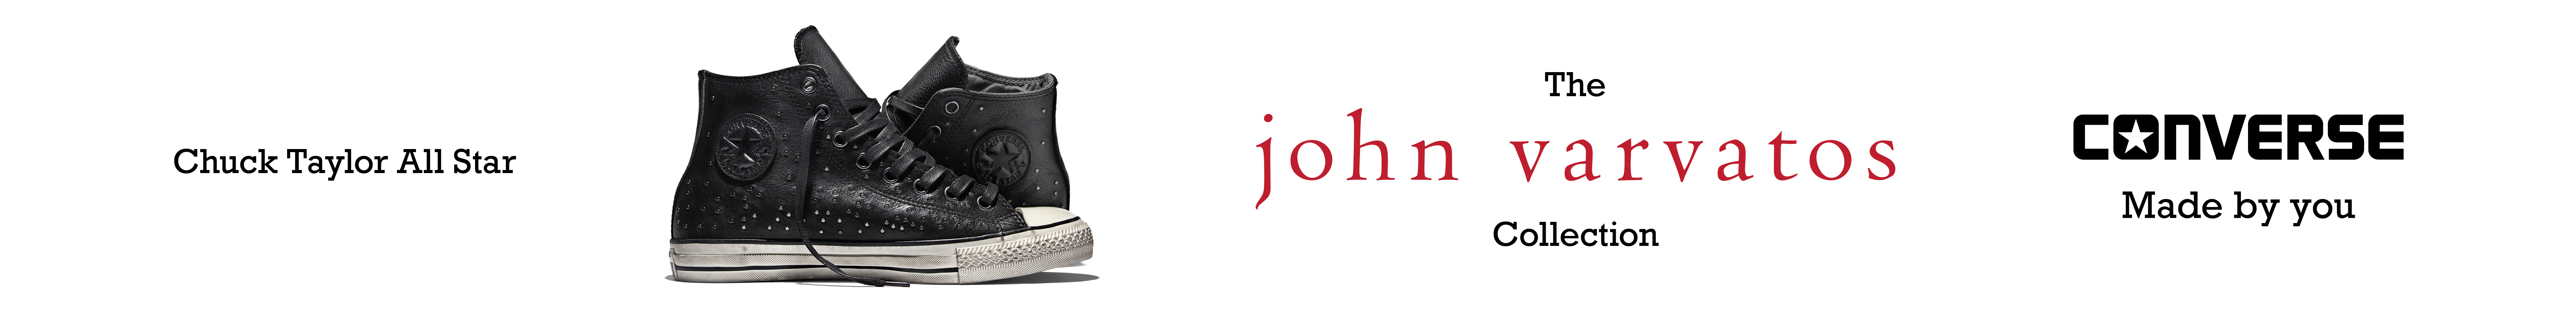 John varvatos Logos